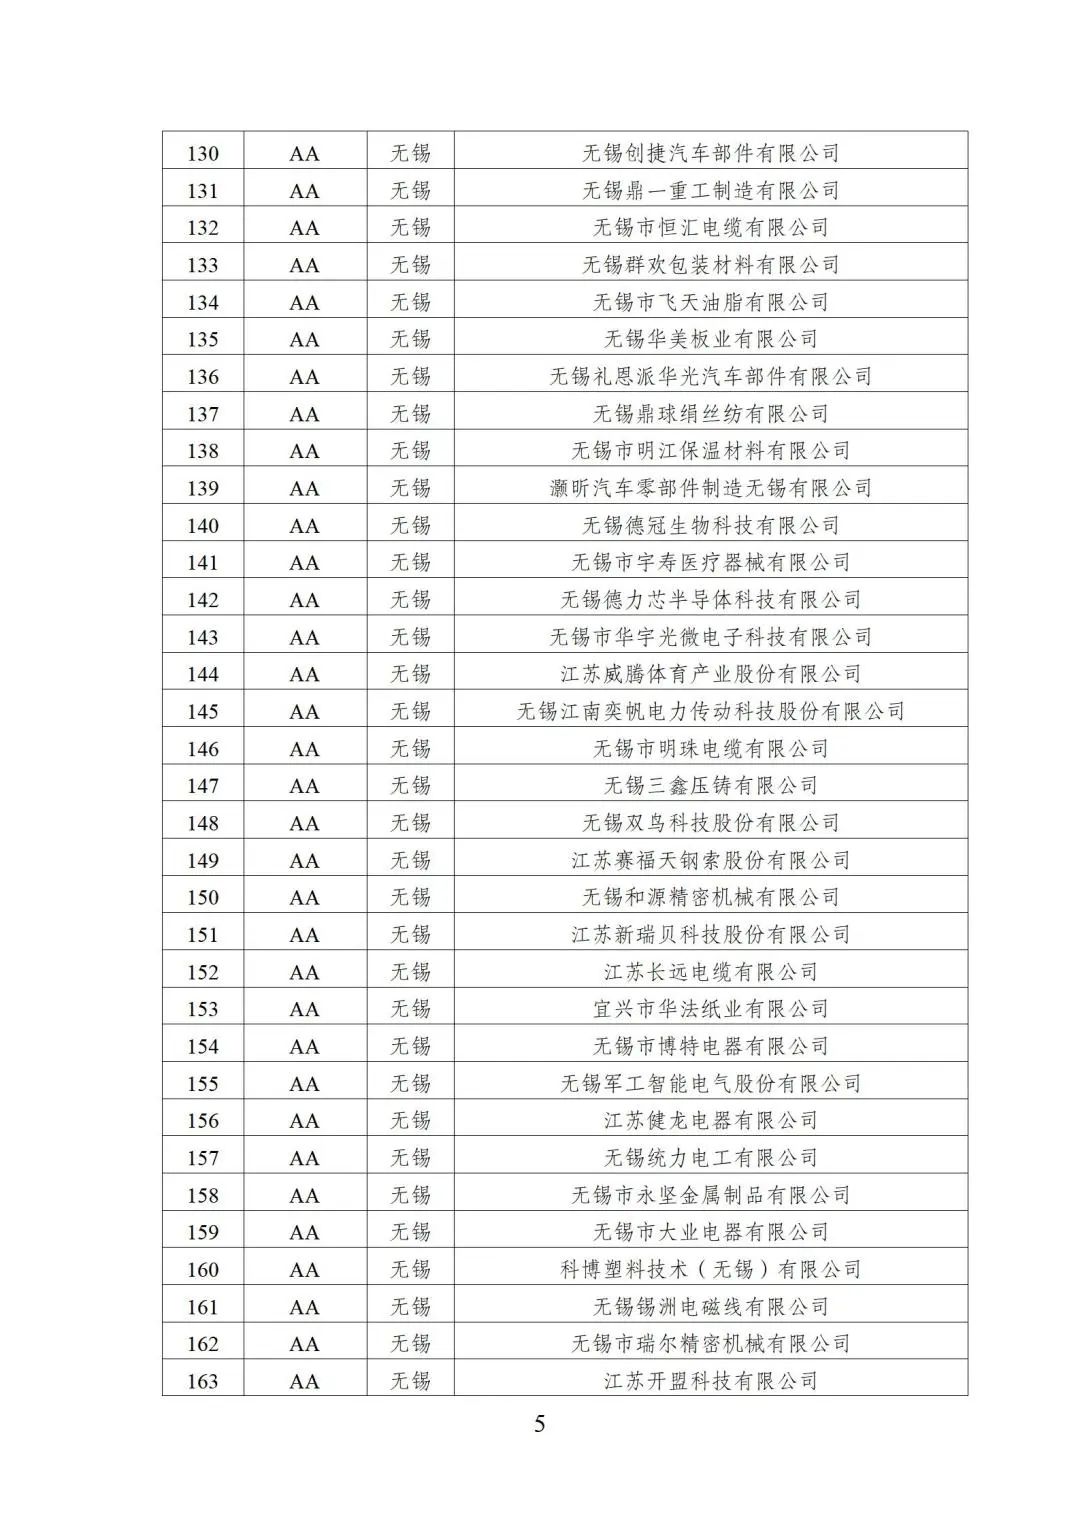 2022年江苏省两化融合管理体系贯标示范企业培育对象名单5.jpg